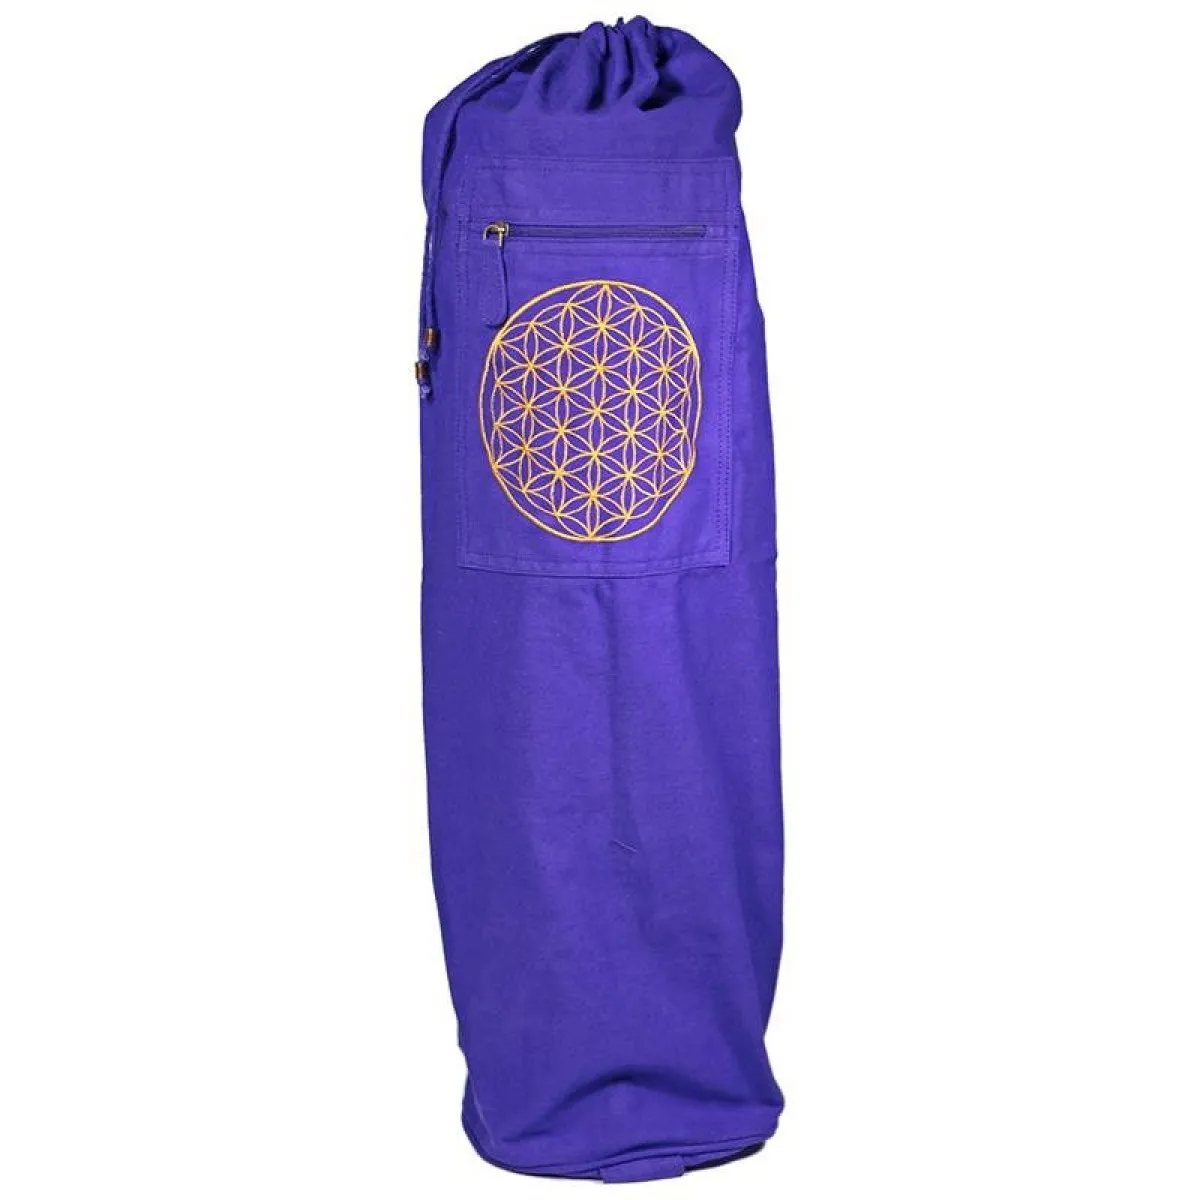 Sac pour tapis de yoga violet avec fleur de vie en or 74x19 cm